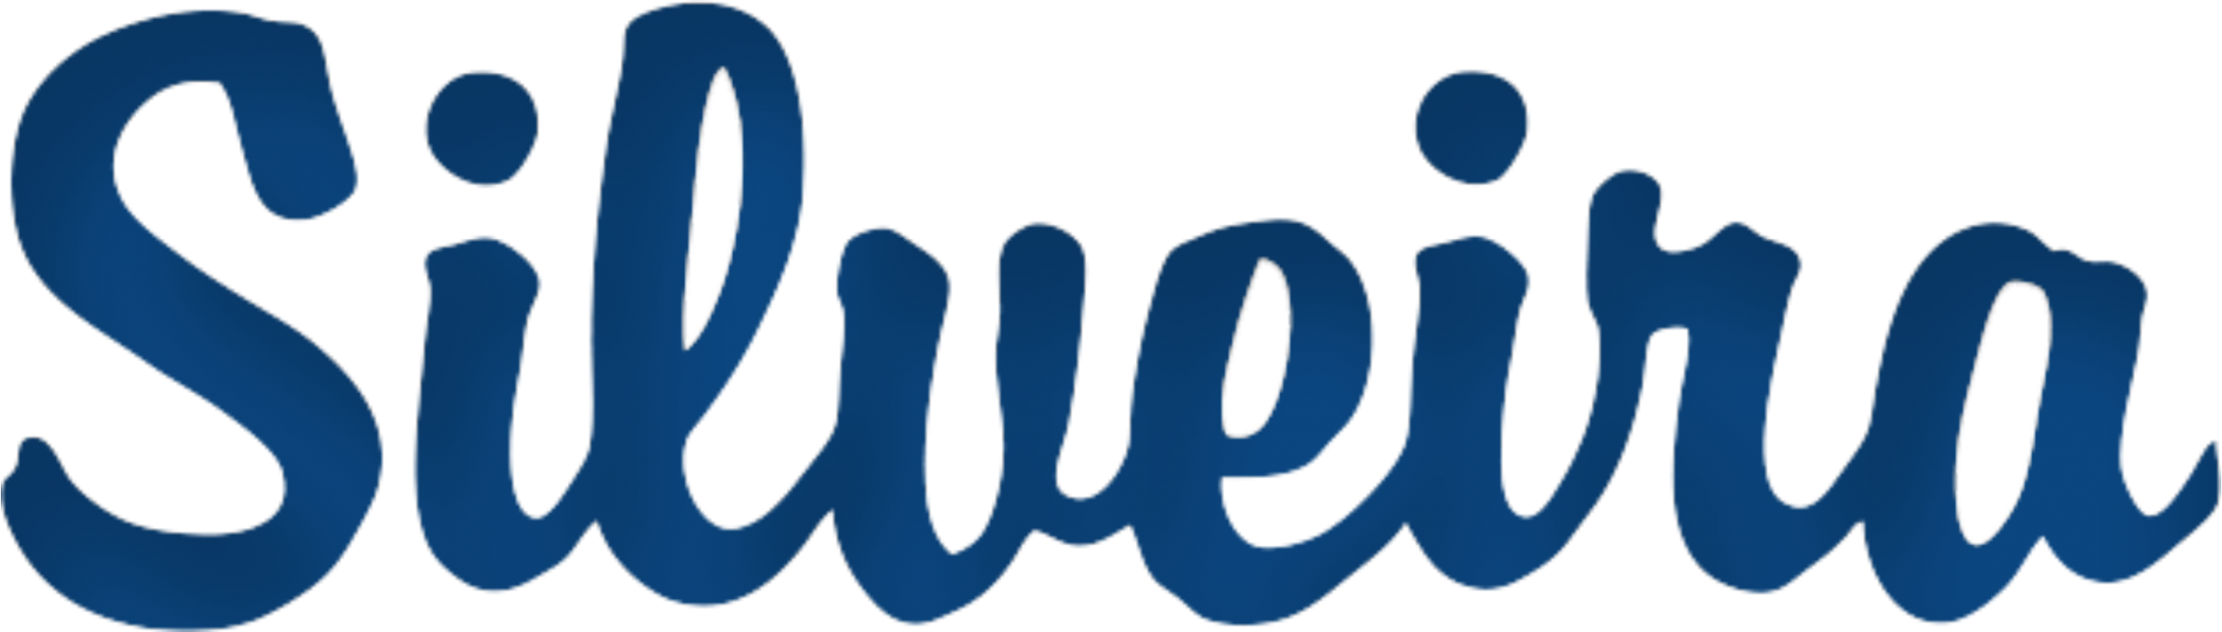 Silveira Logo